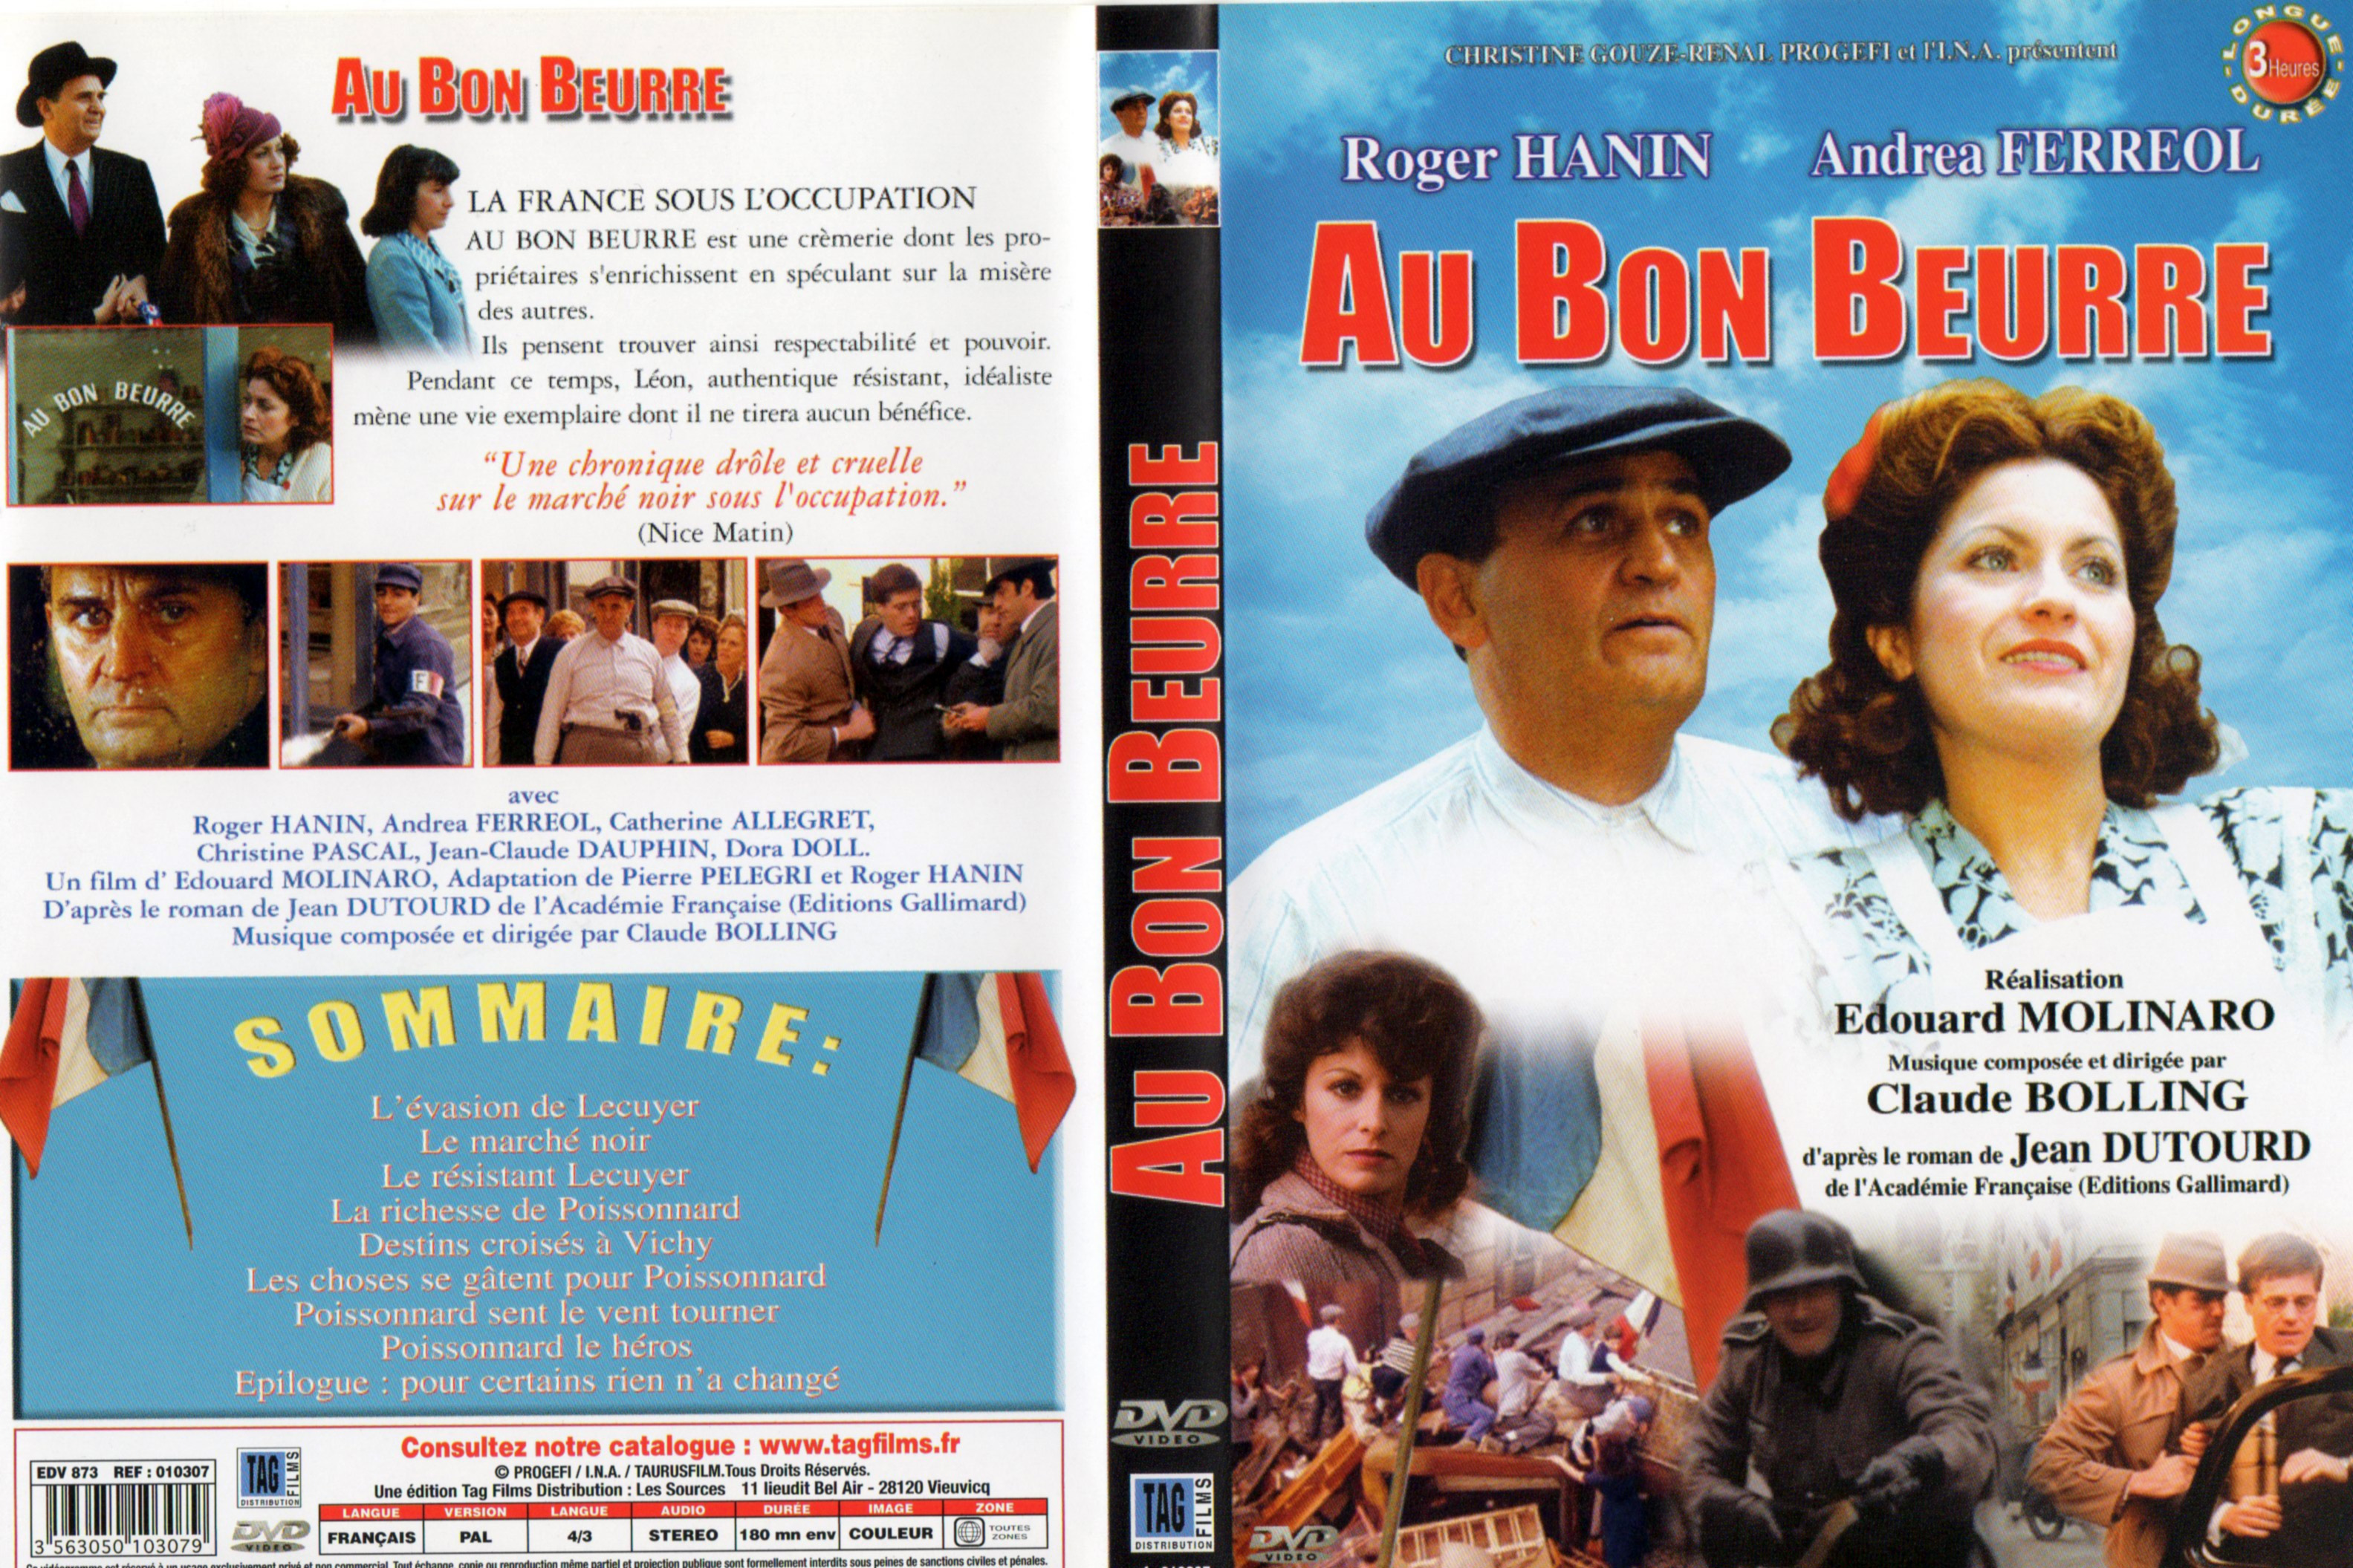 Jaquette DVD Au bon beurre